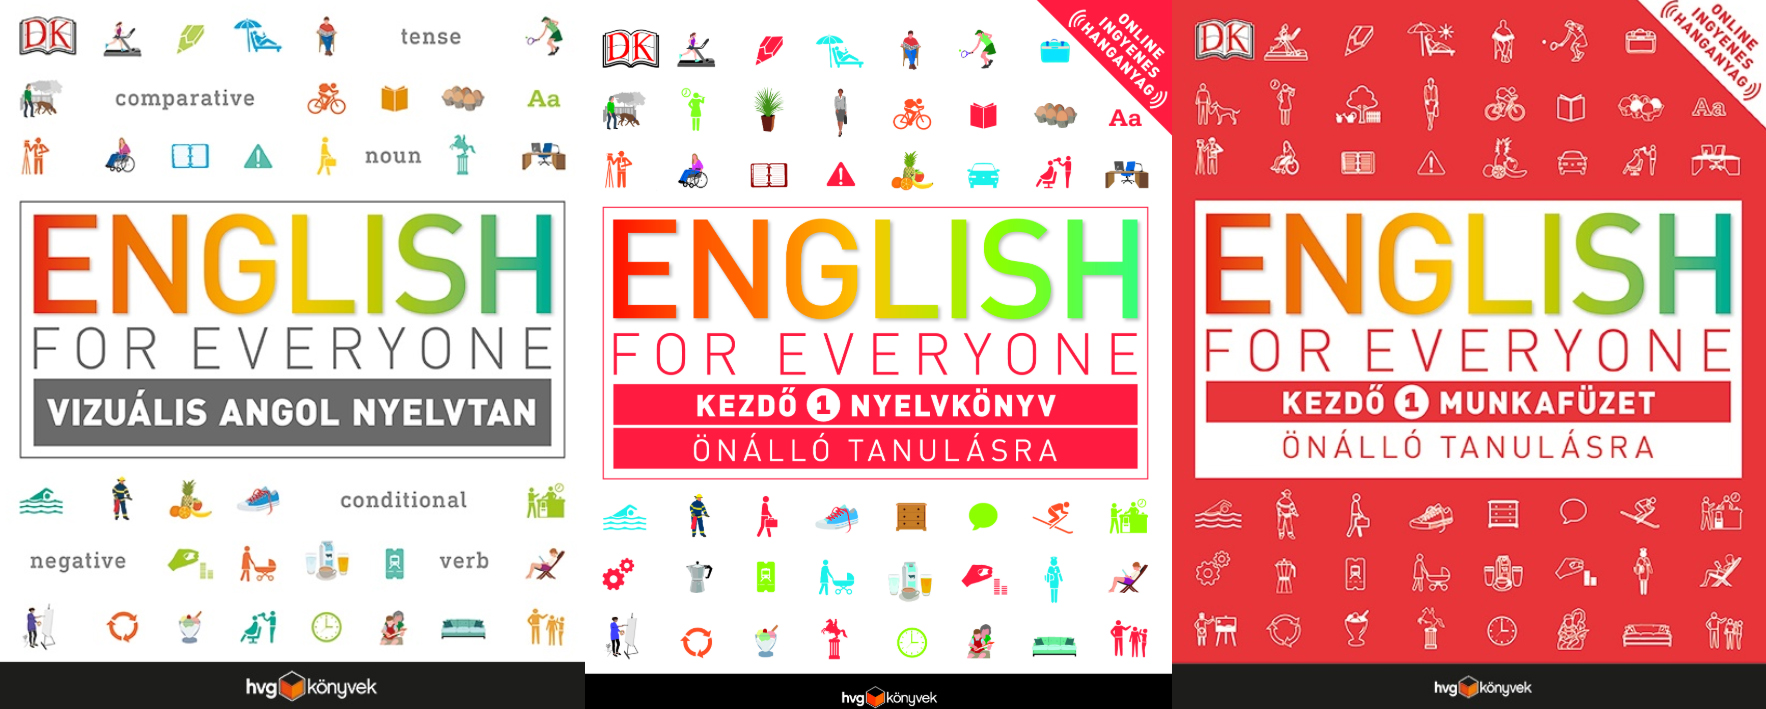 Tanulj angolul könnyedén - English for Everyone